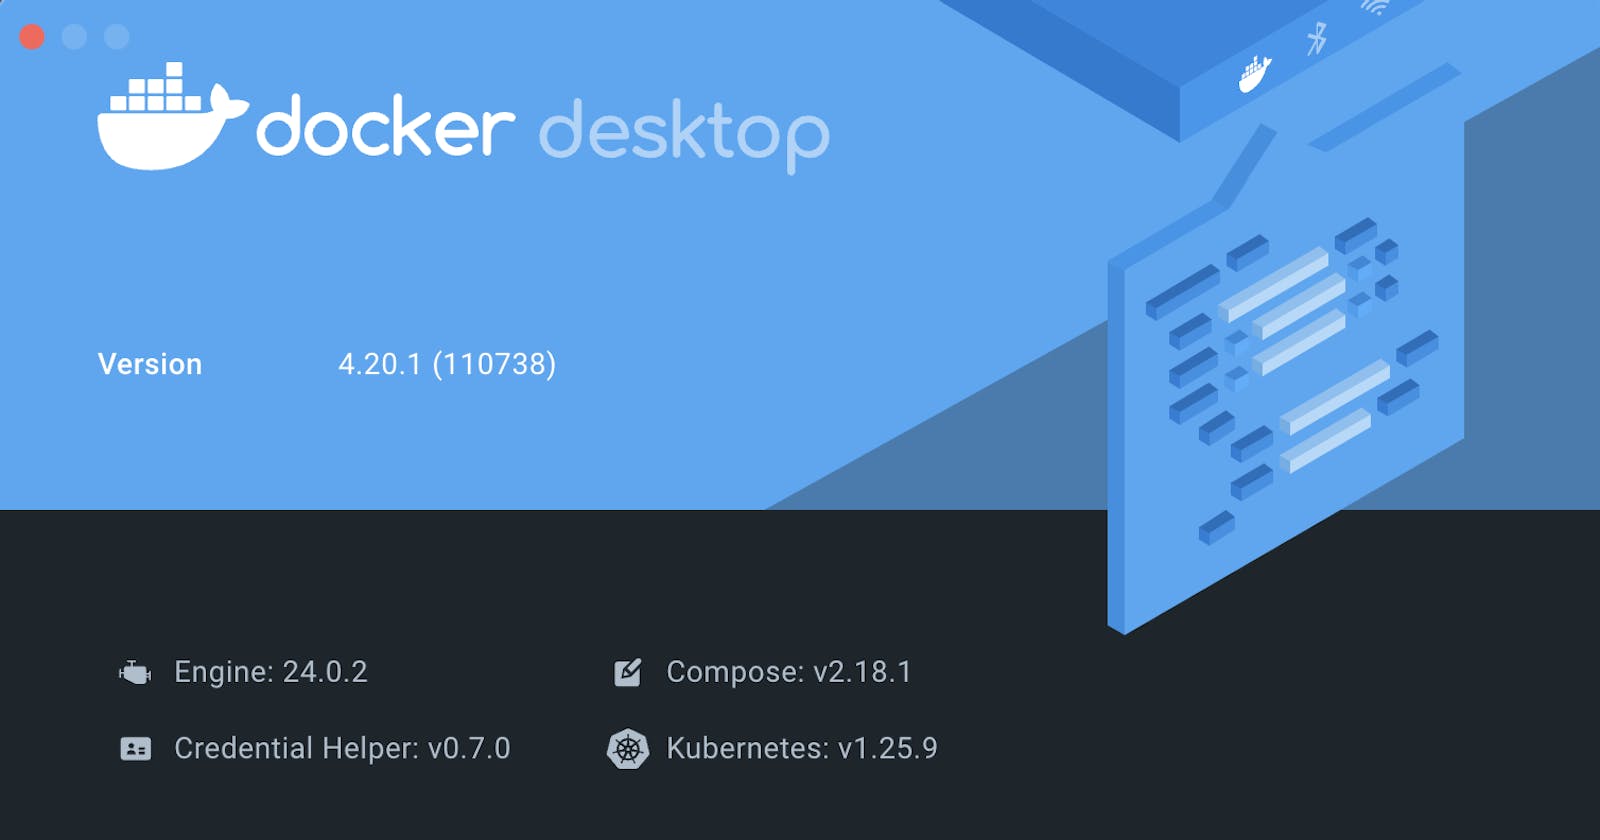 Setting up Kubernetes on Docker Desktop in 2 Minutes